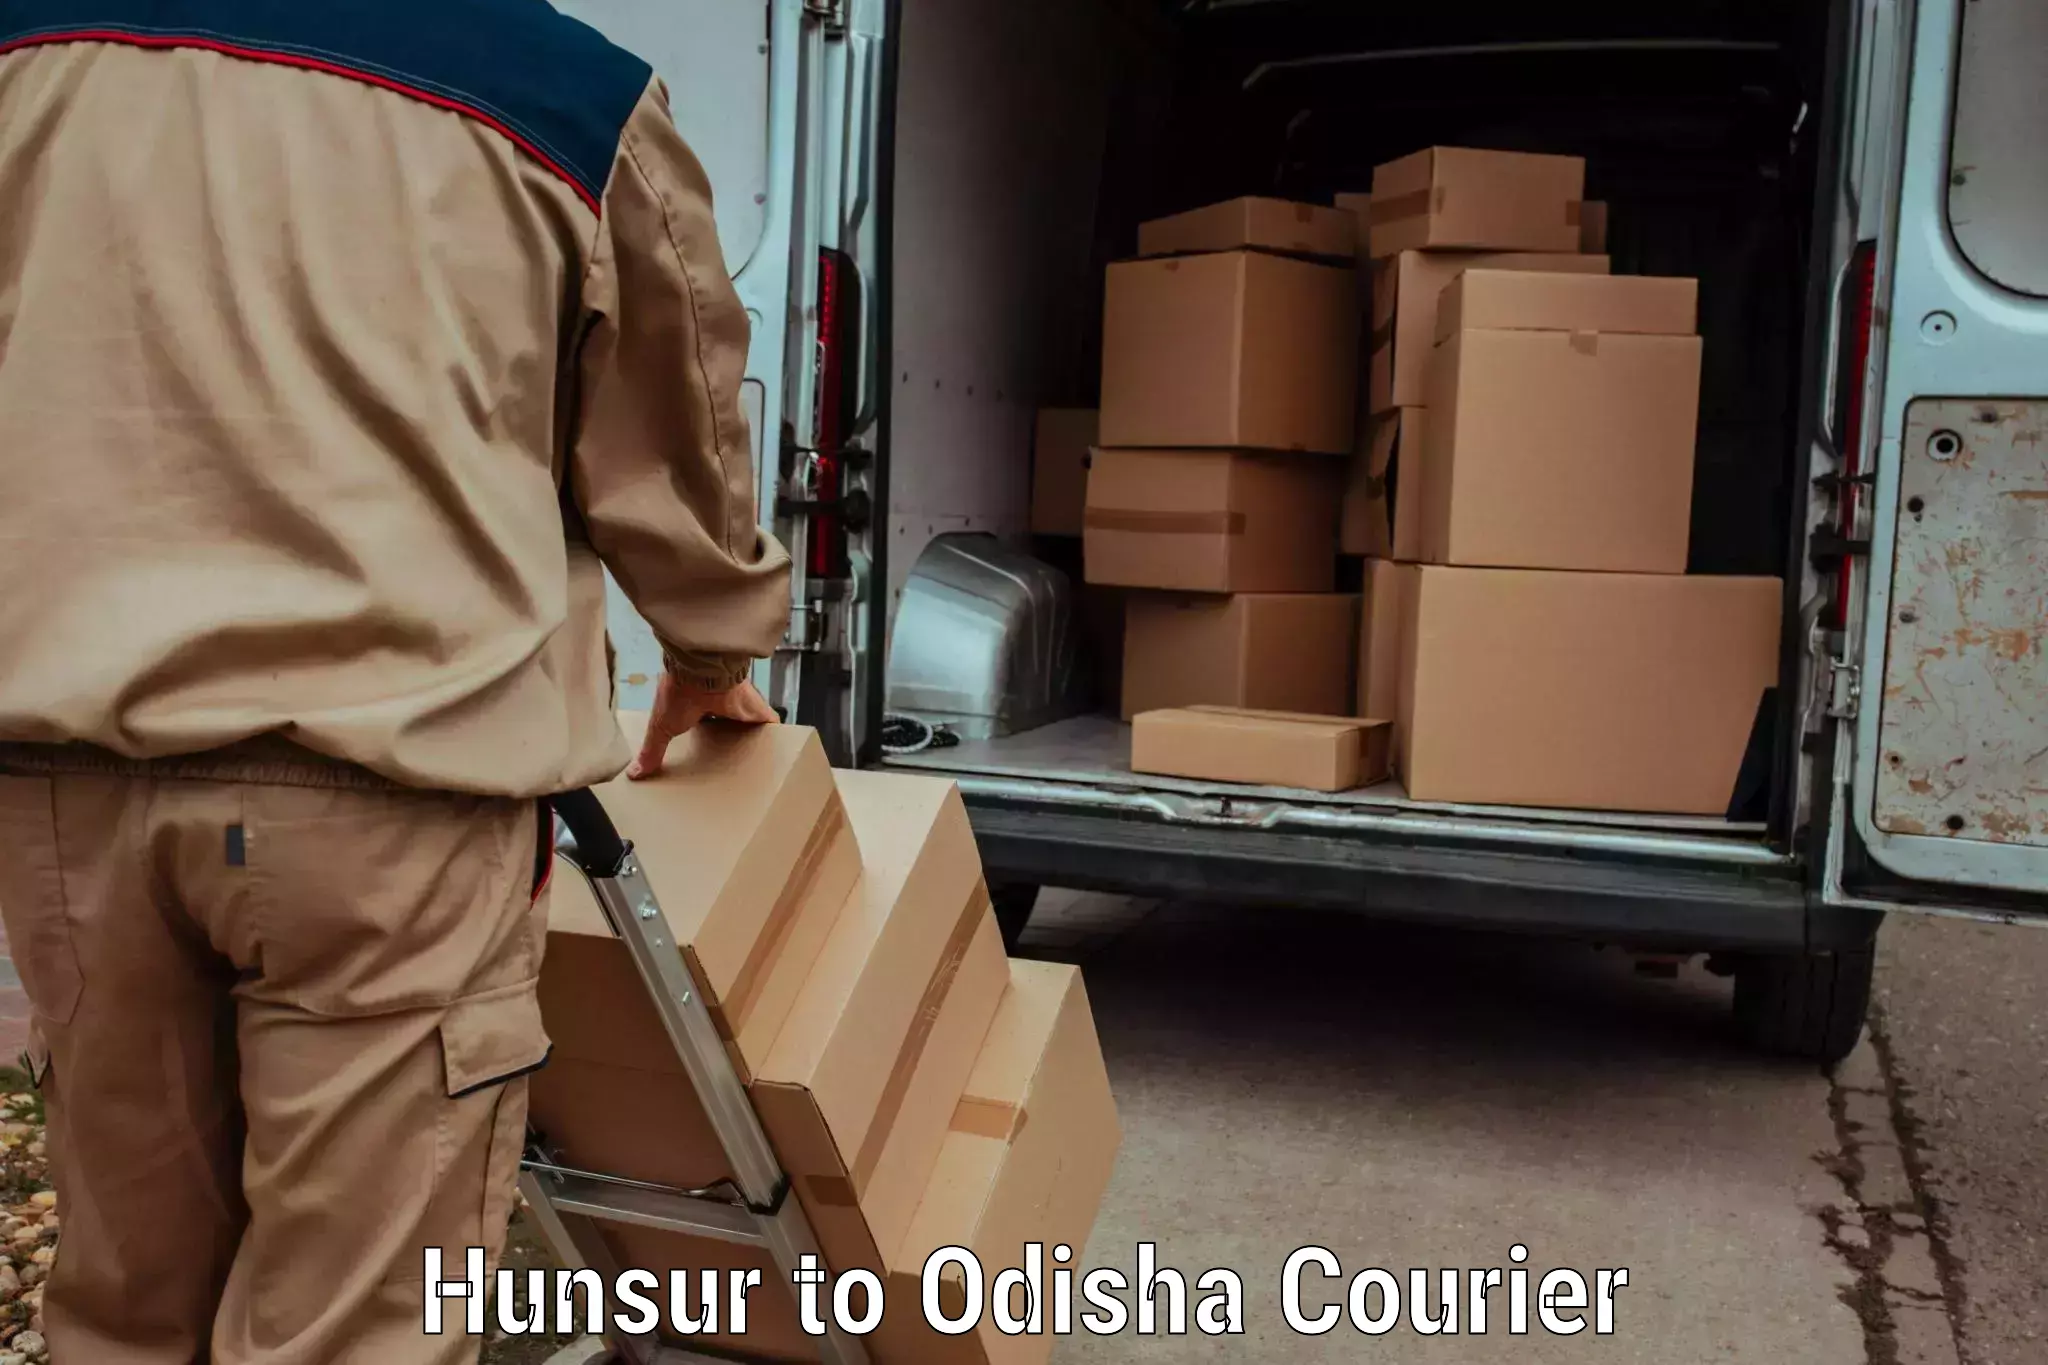 Bulk shipment Hunsur to Dandisahi